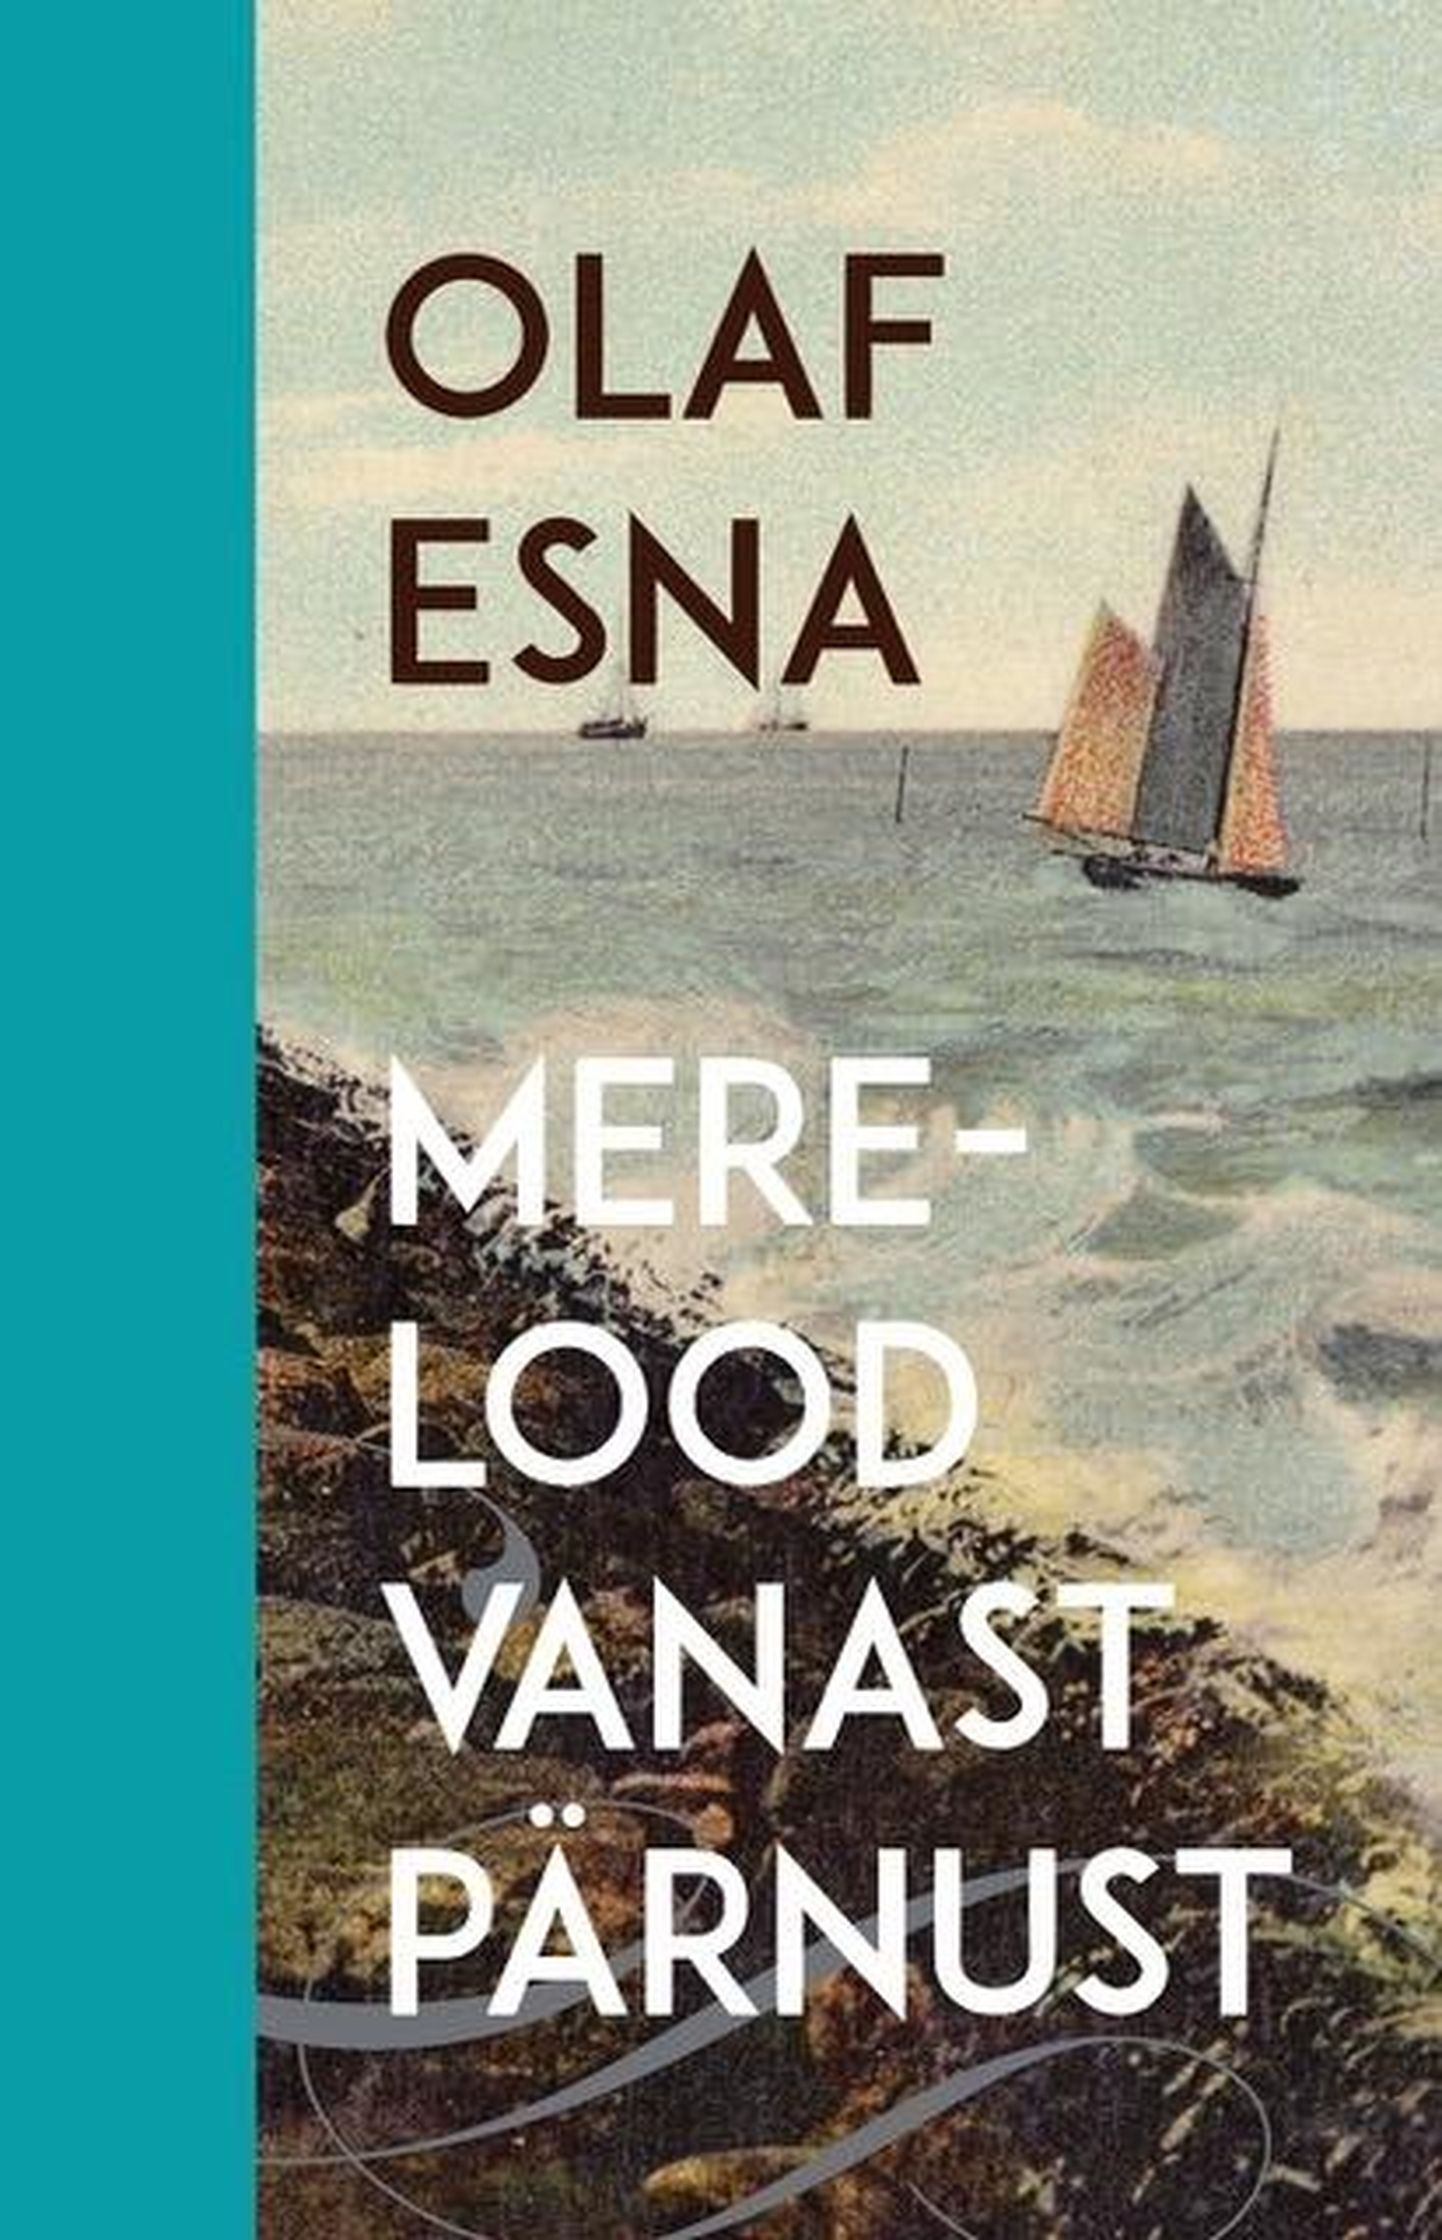 Olaf Esna “Merelood vanast Pärnust”.